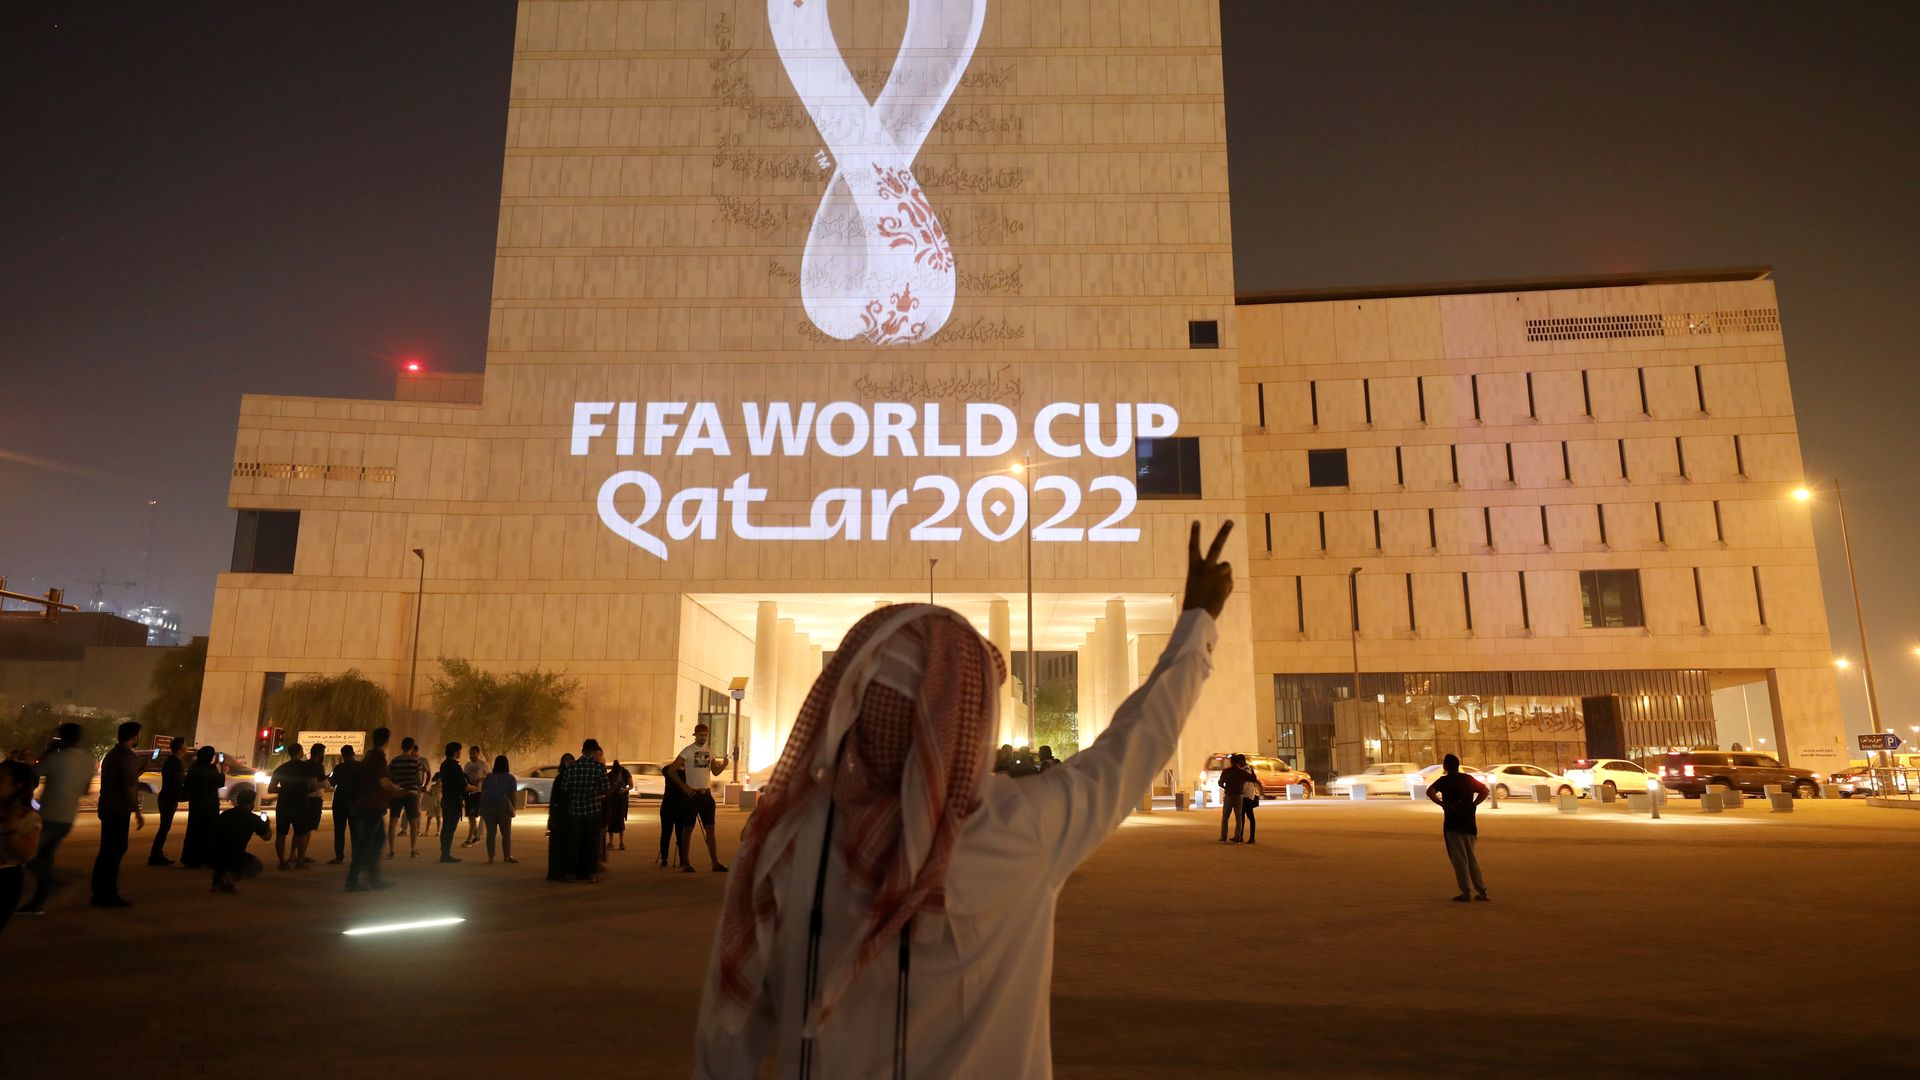 Qatar World Cup emblem